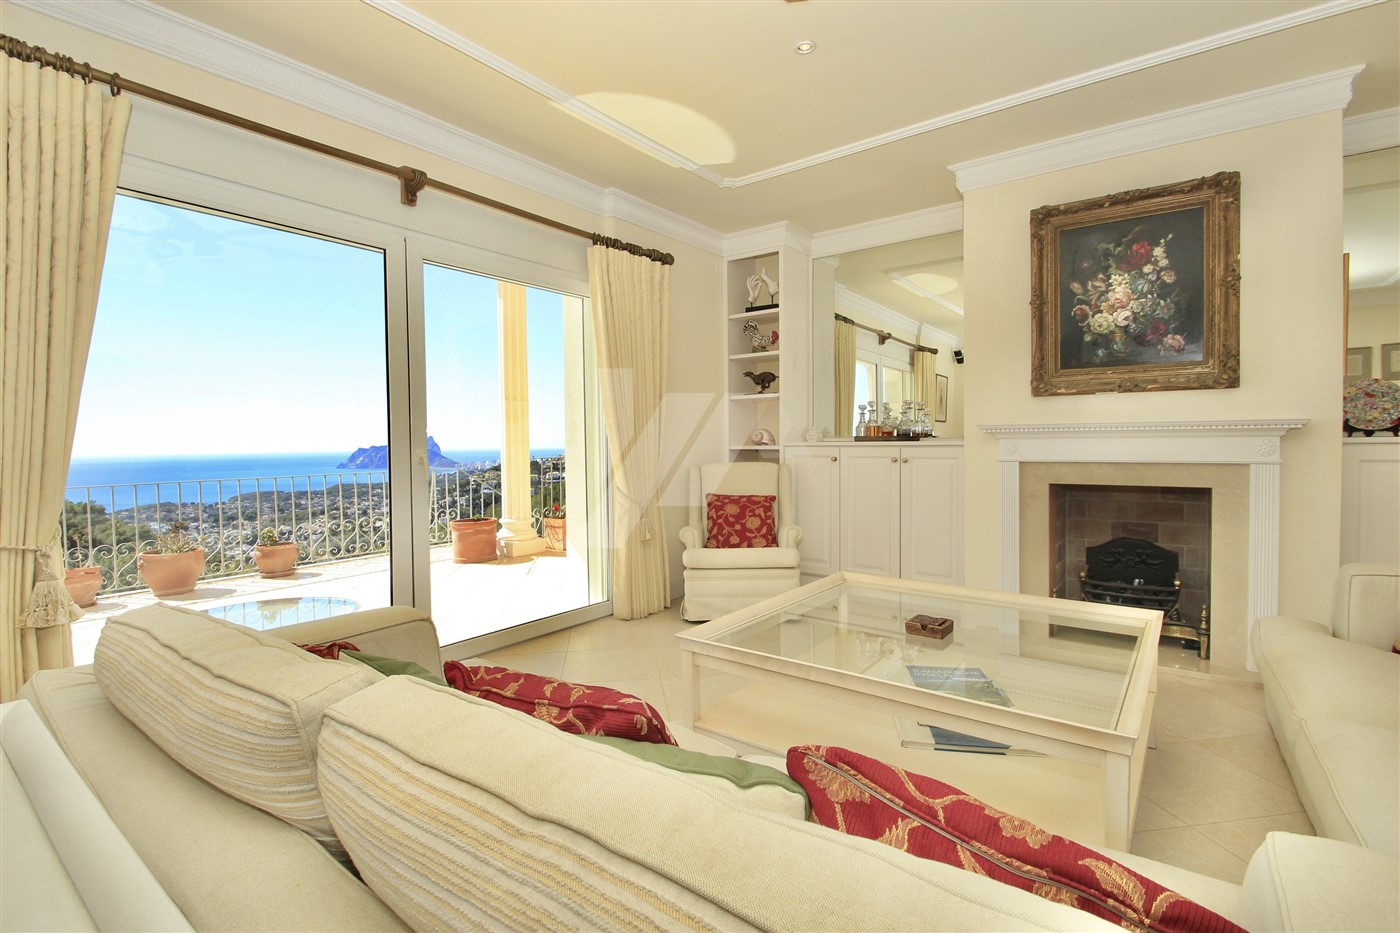 Villa de lujo en venta con vistas panorámicas al mar en Moraira, Costa Blanca.